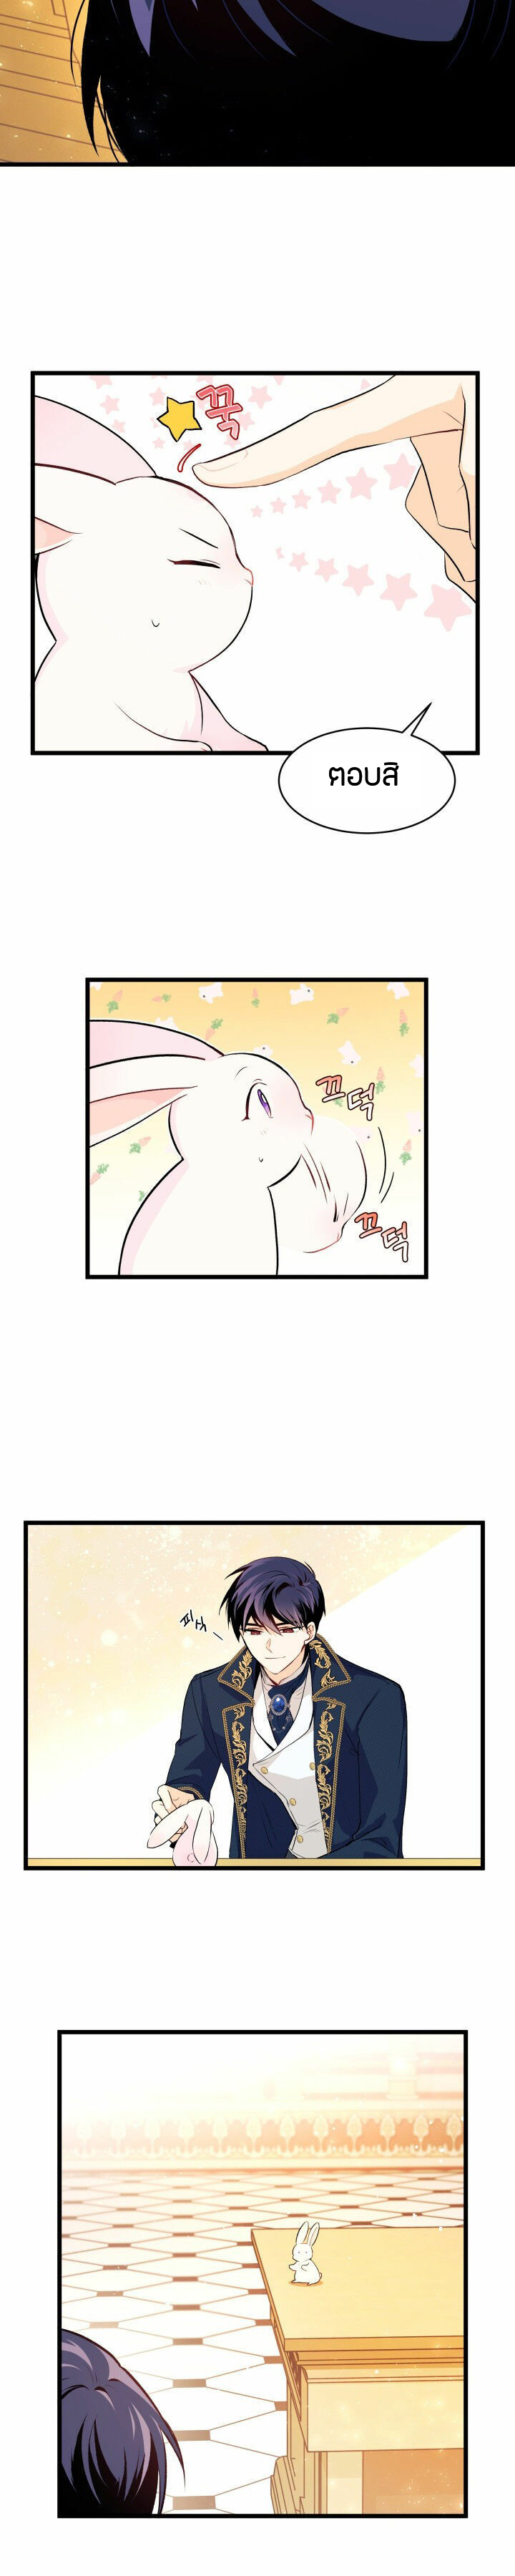 rabbit7 19